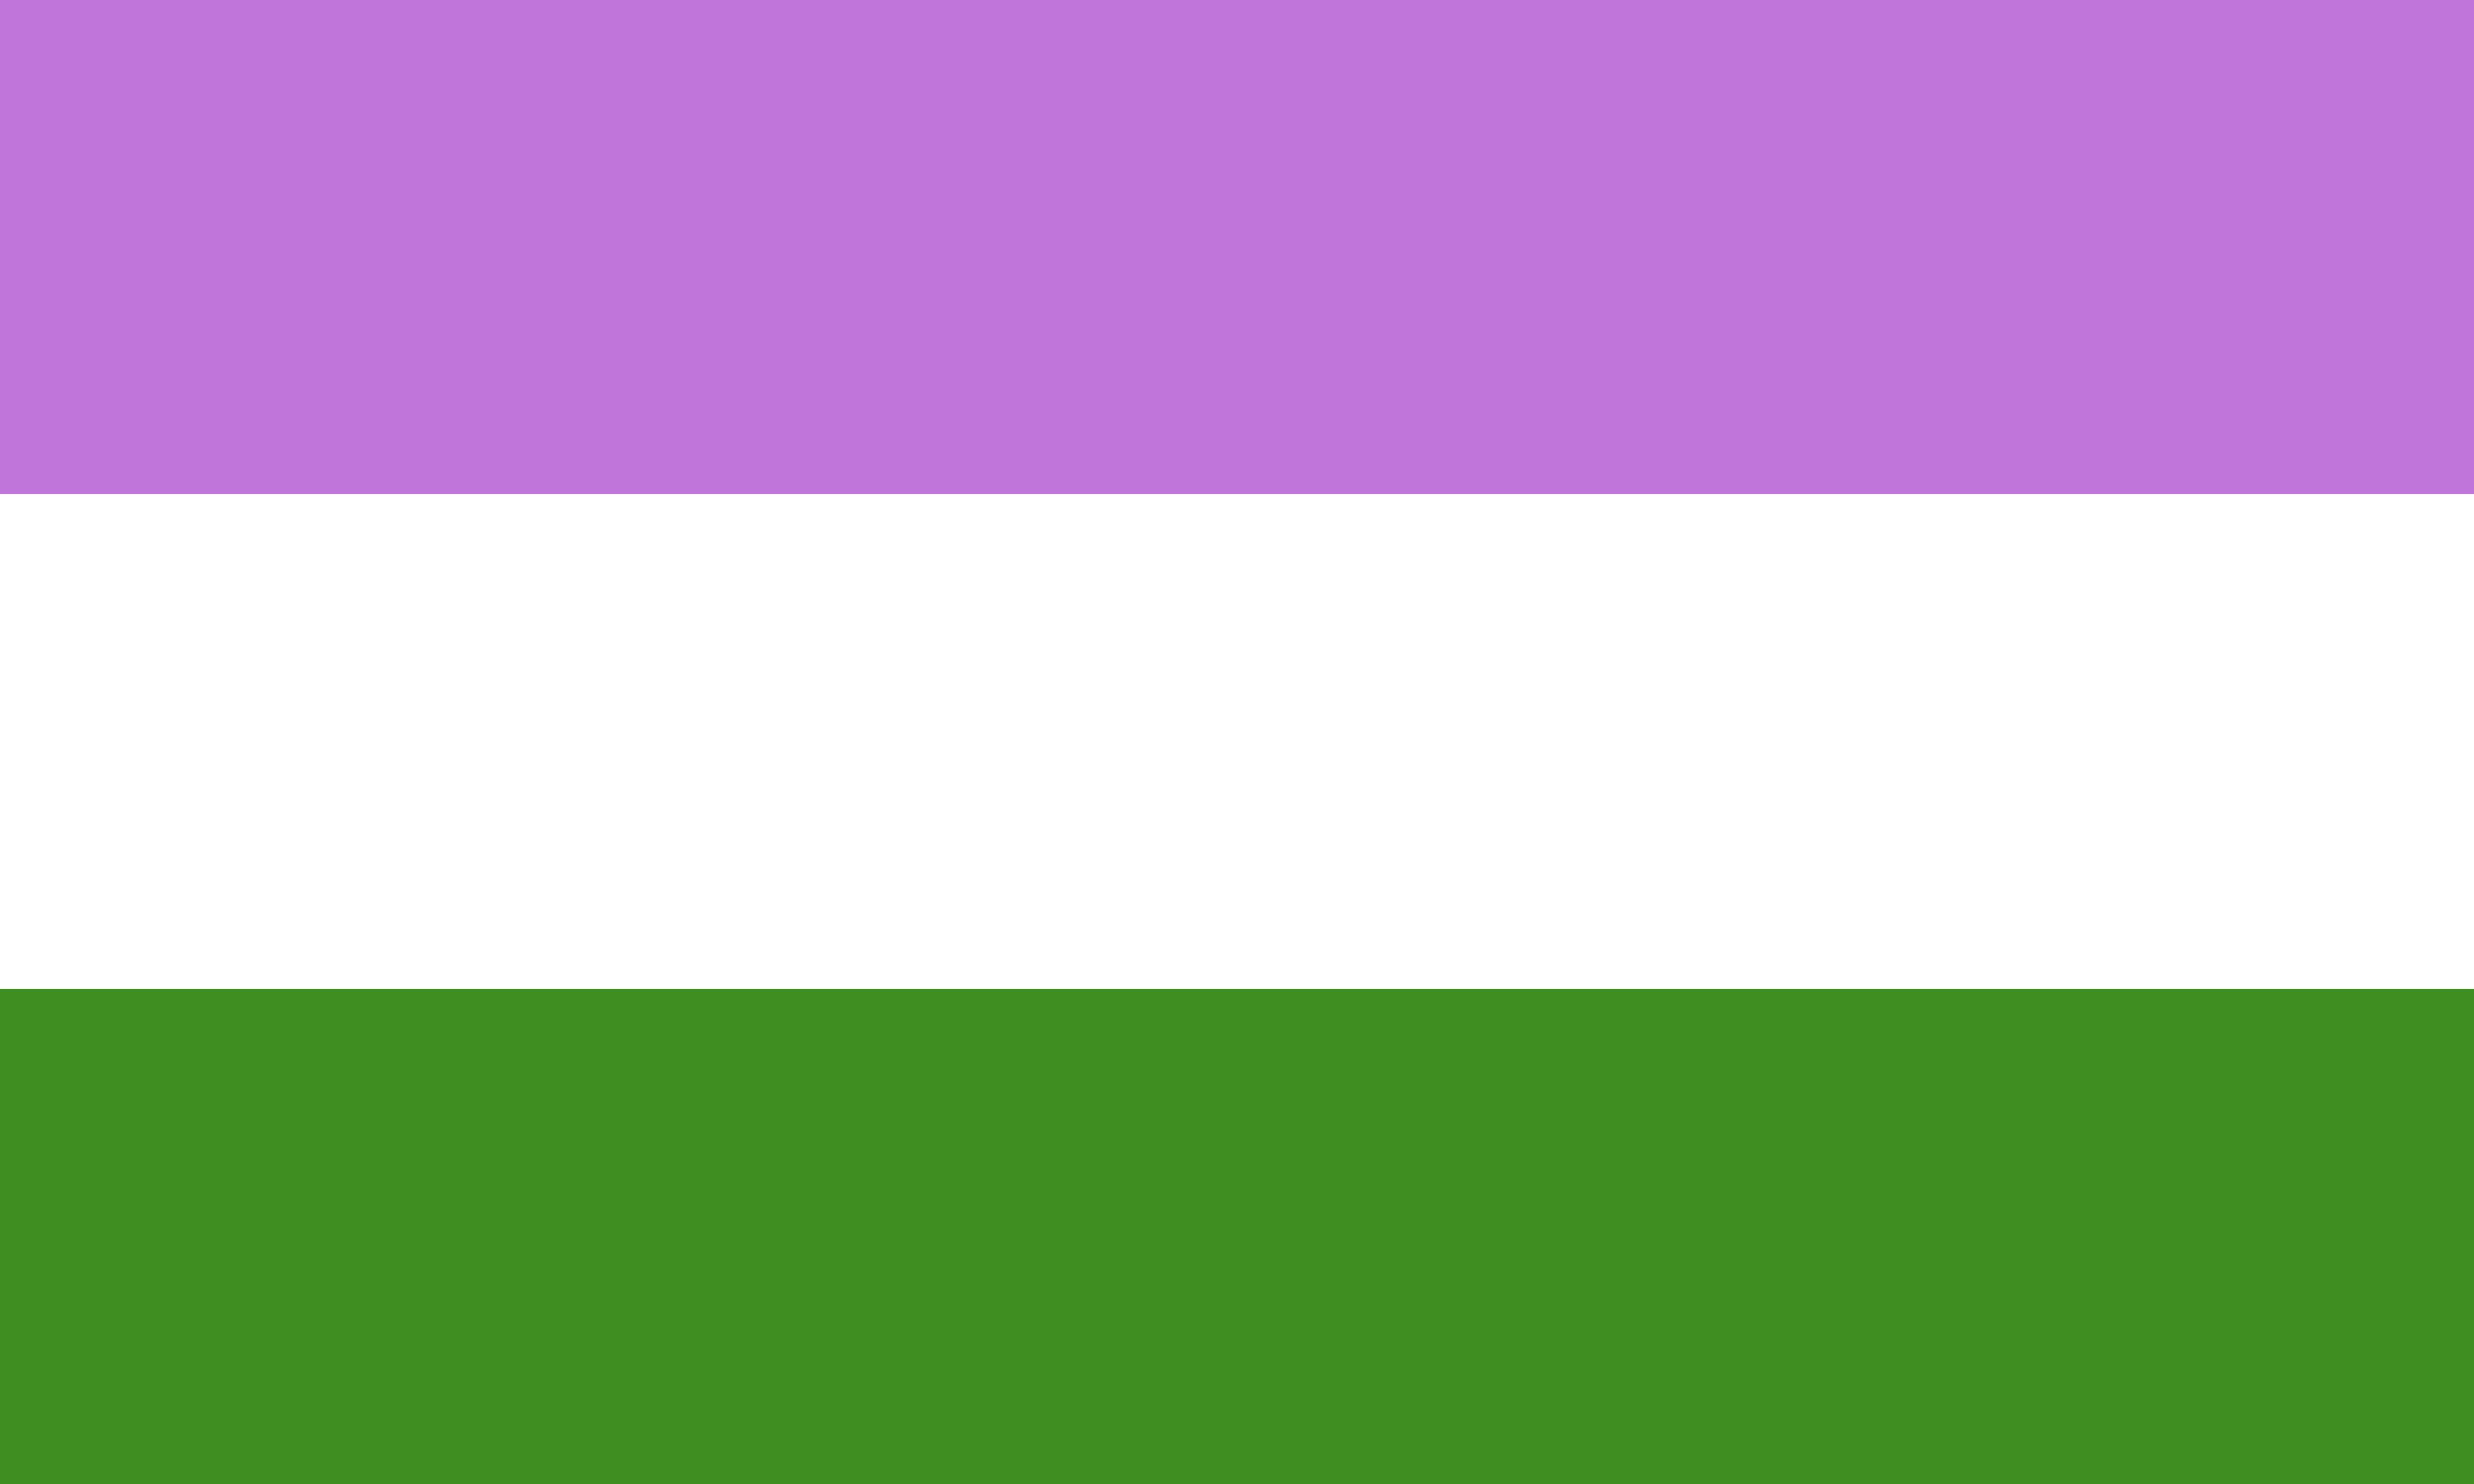 Bandeira queer com as cores branca, roxa e verde.